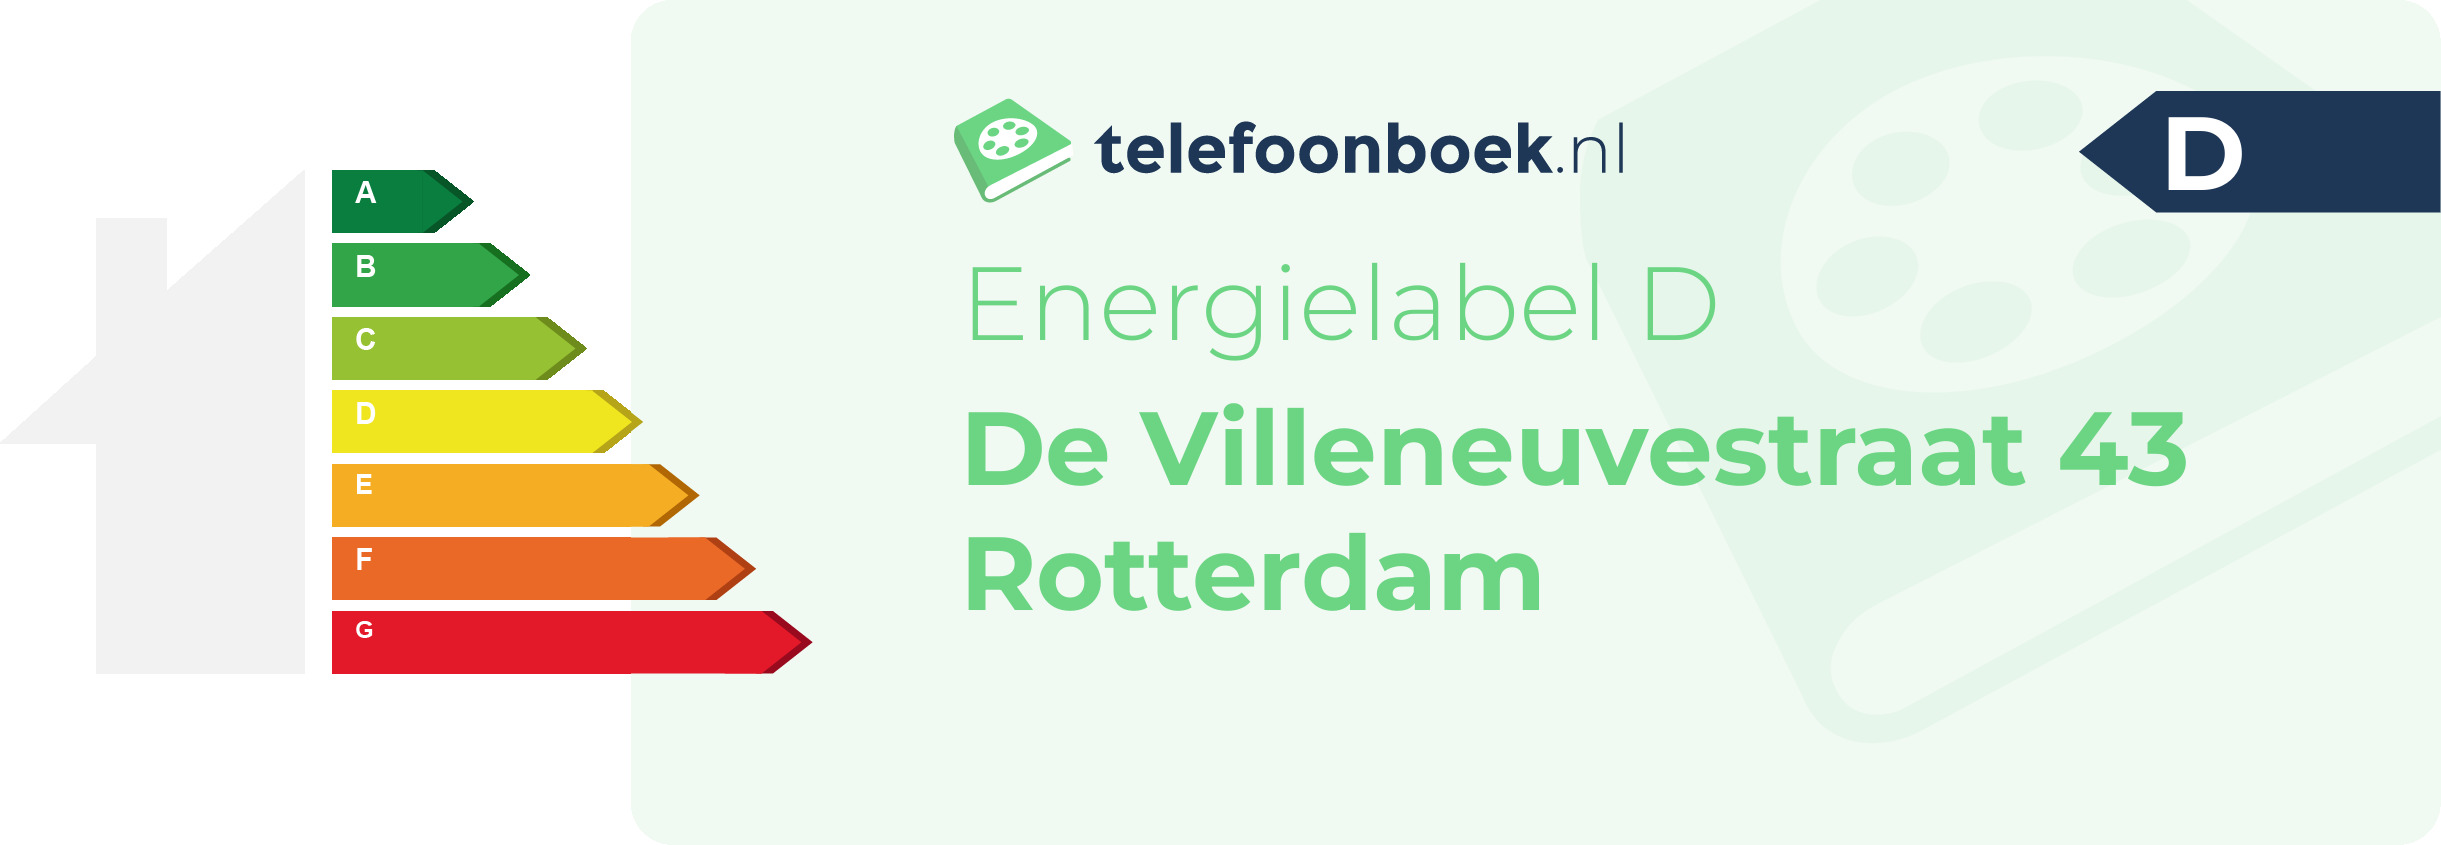 Energielabel De Villeneuvestraat 43 Rotterdam